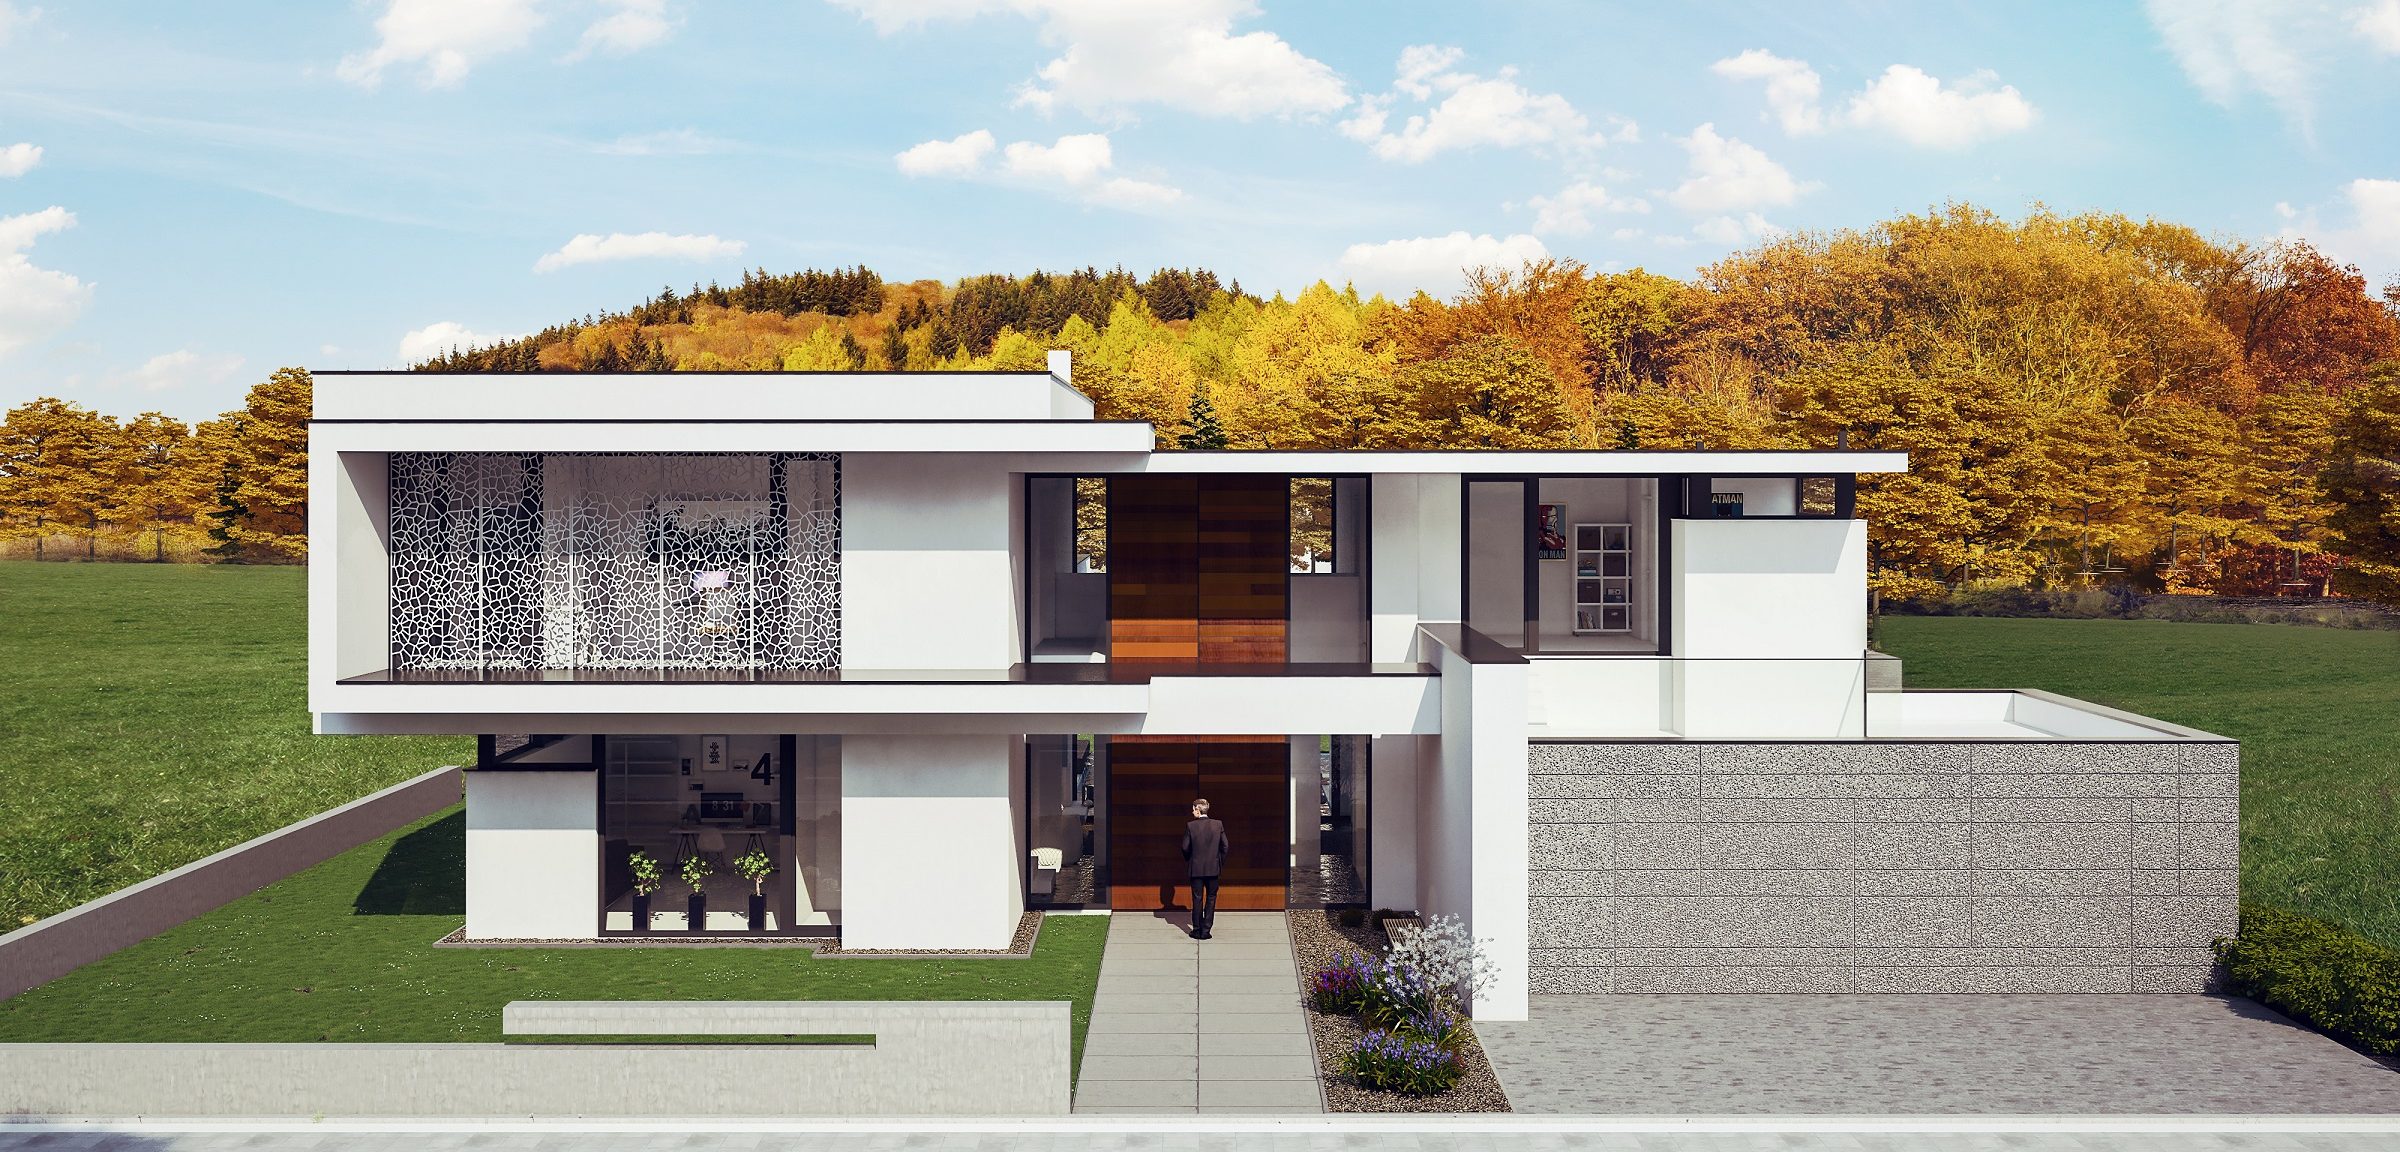 Einfamilienhaus in Königstein in einem sehr modernen Baustil von der Straße aus